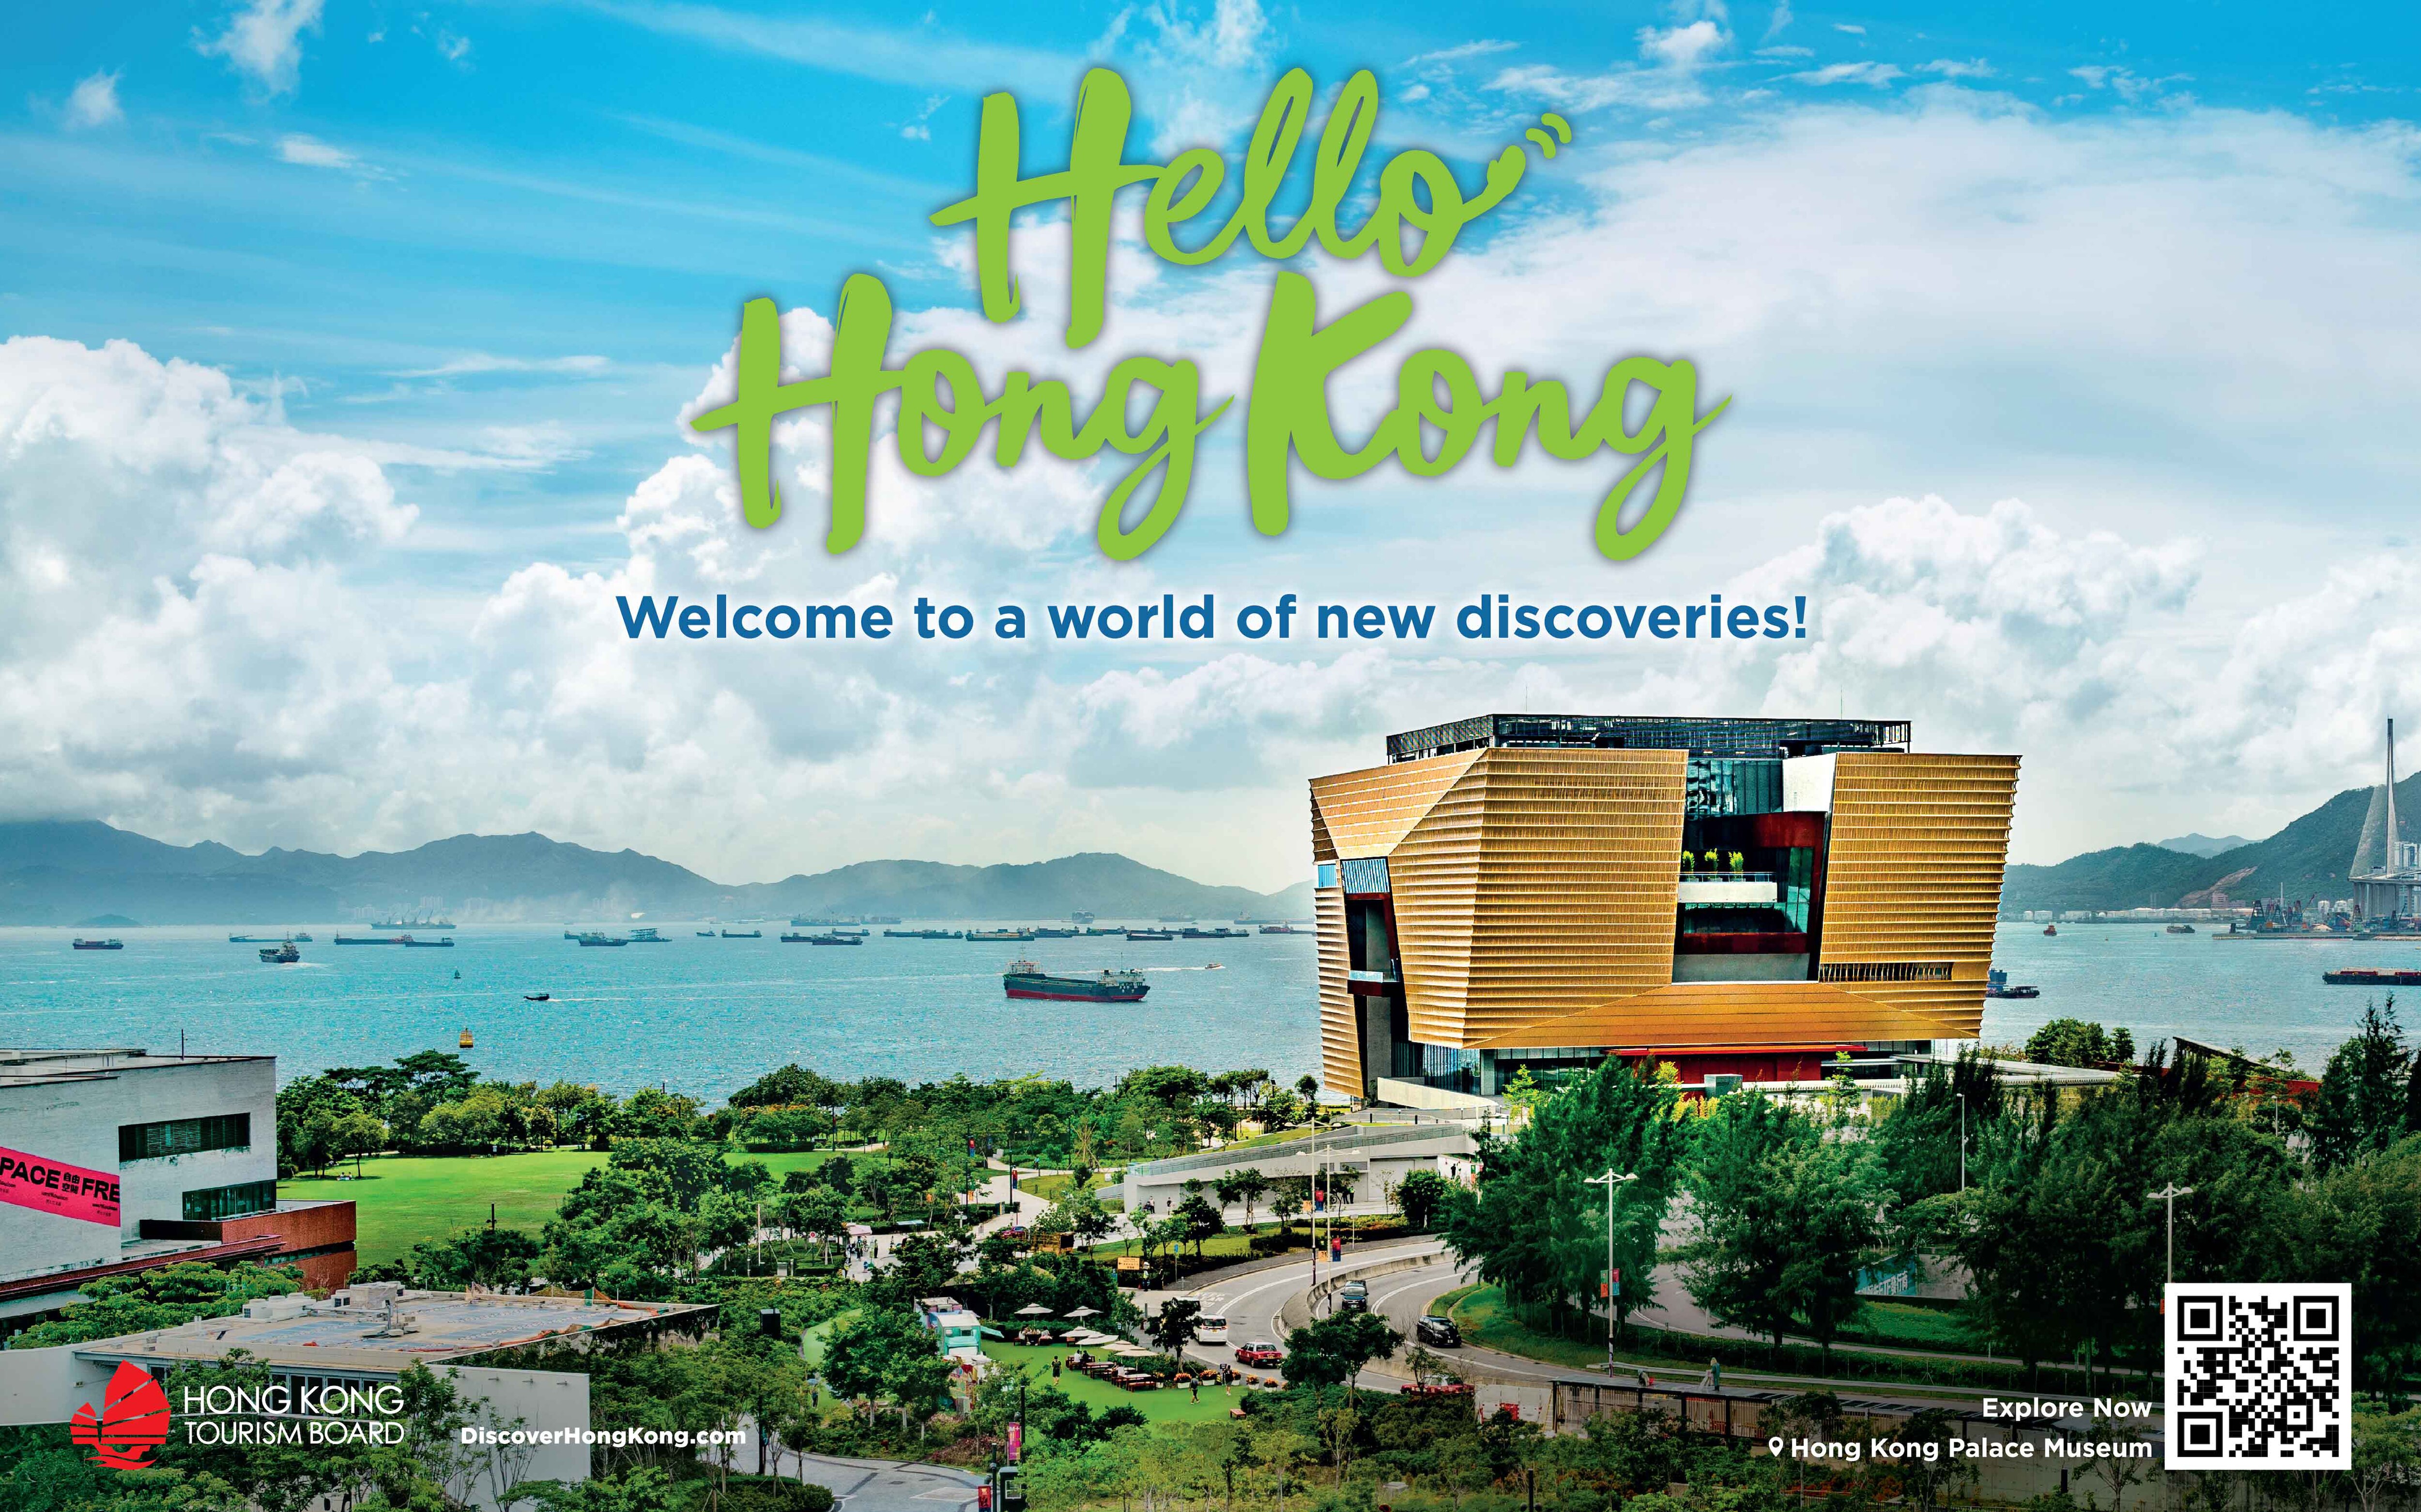 Photo source: Hong Kong Tourism Board